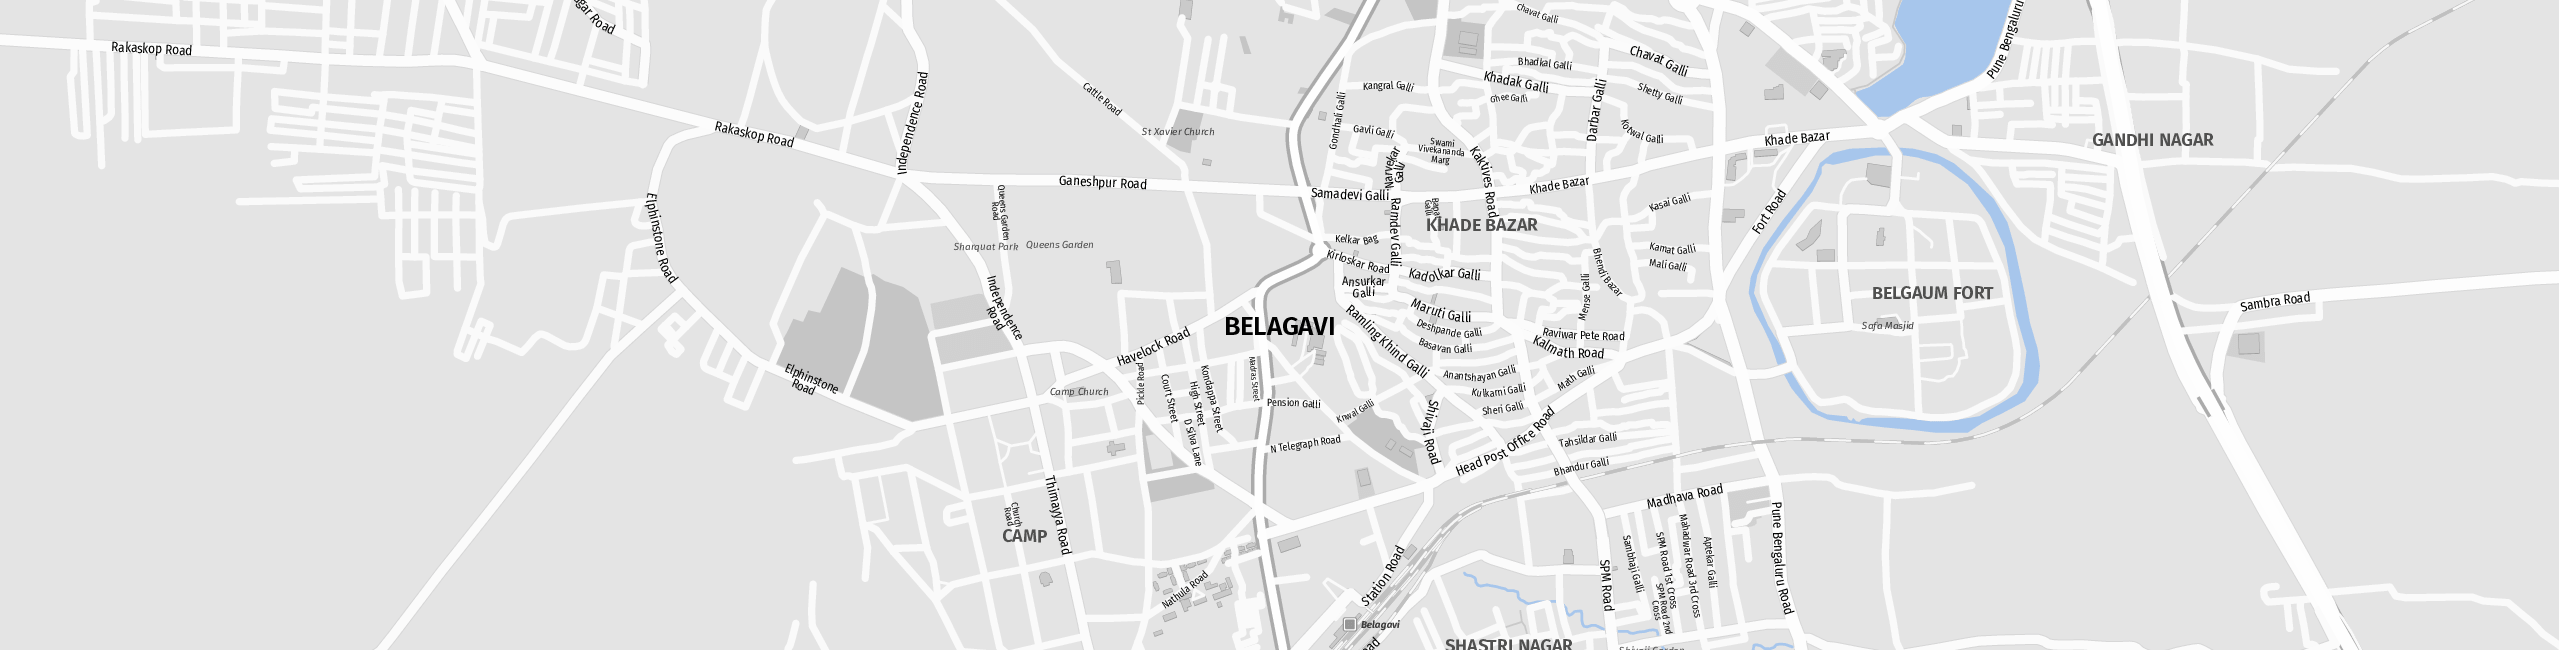 Stadtplan Belagavi zum Downloaden.